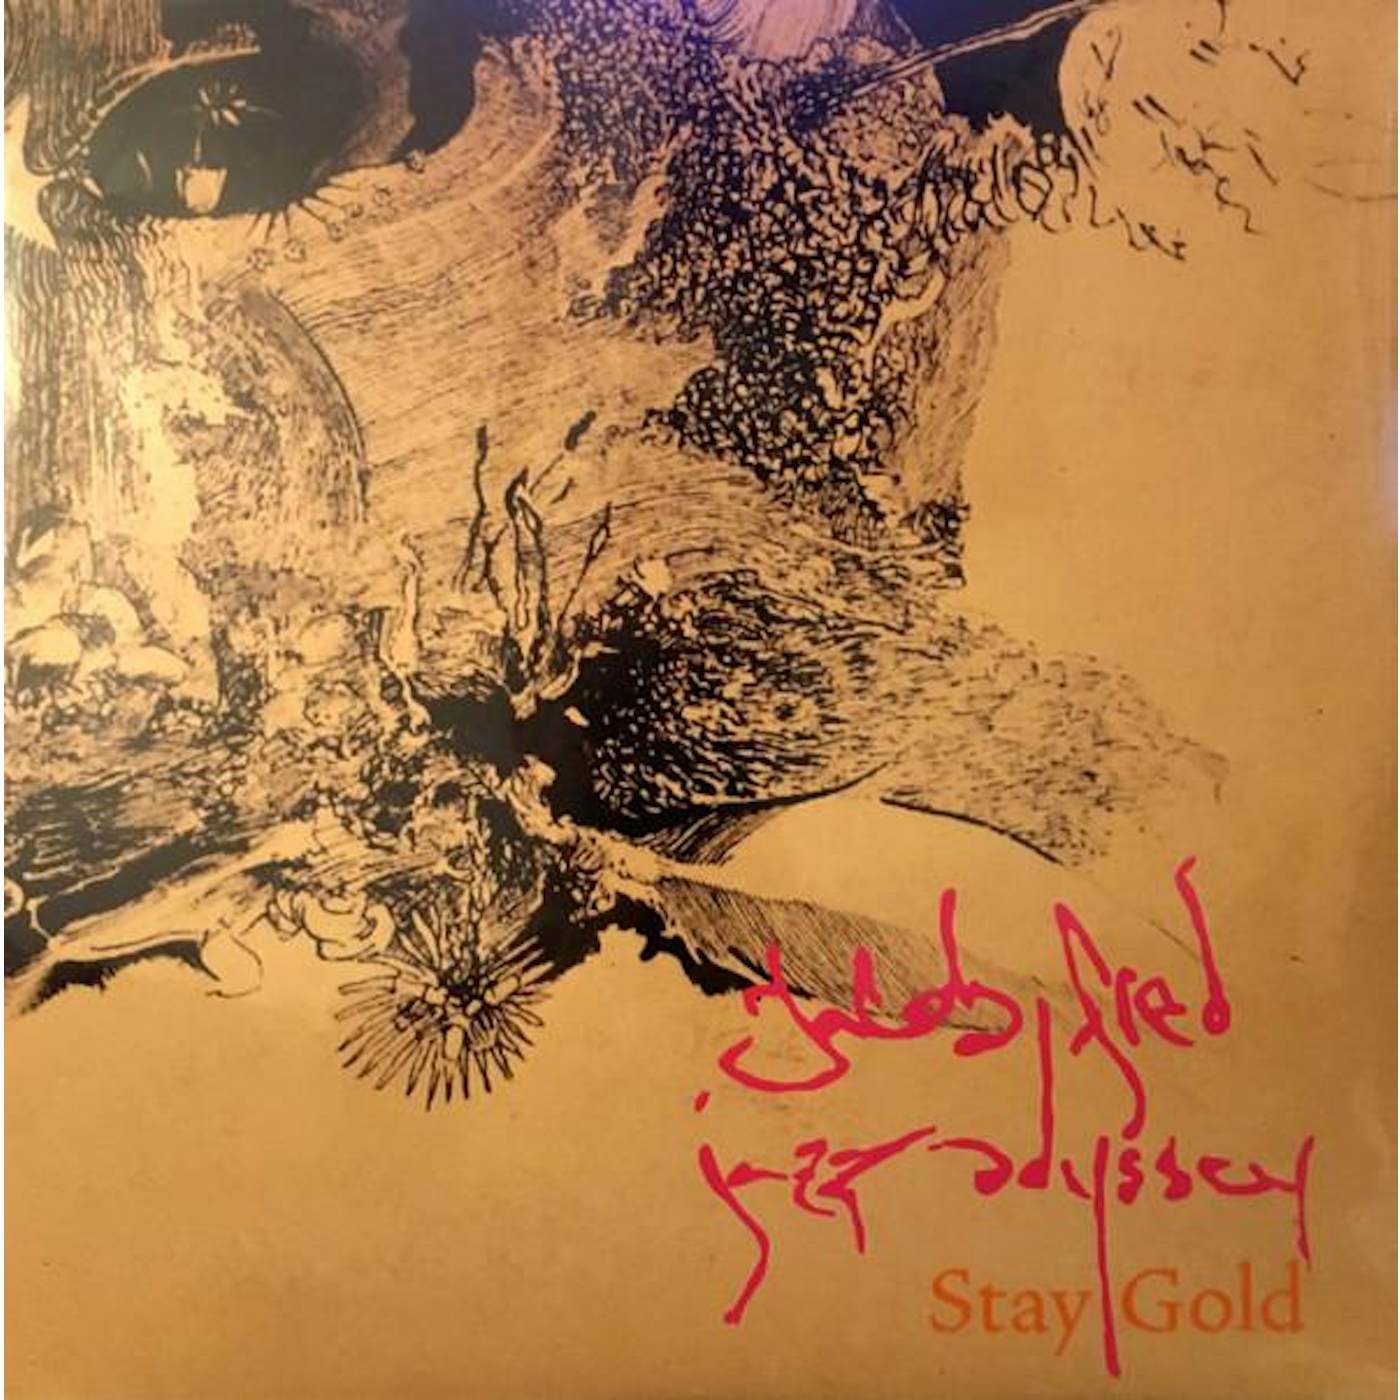 Jacob Fred Jazz Odyssey Stay Gold Vinyl Record